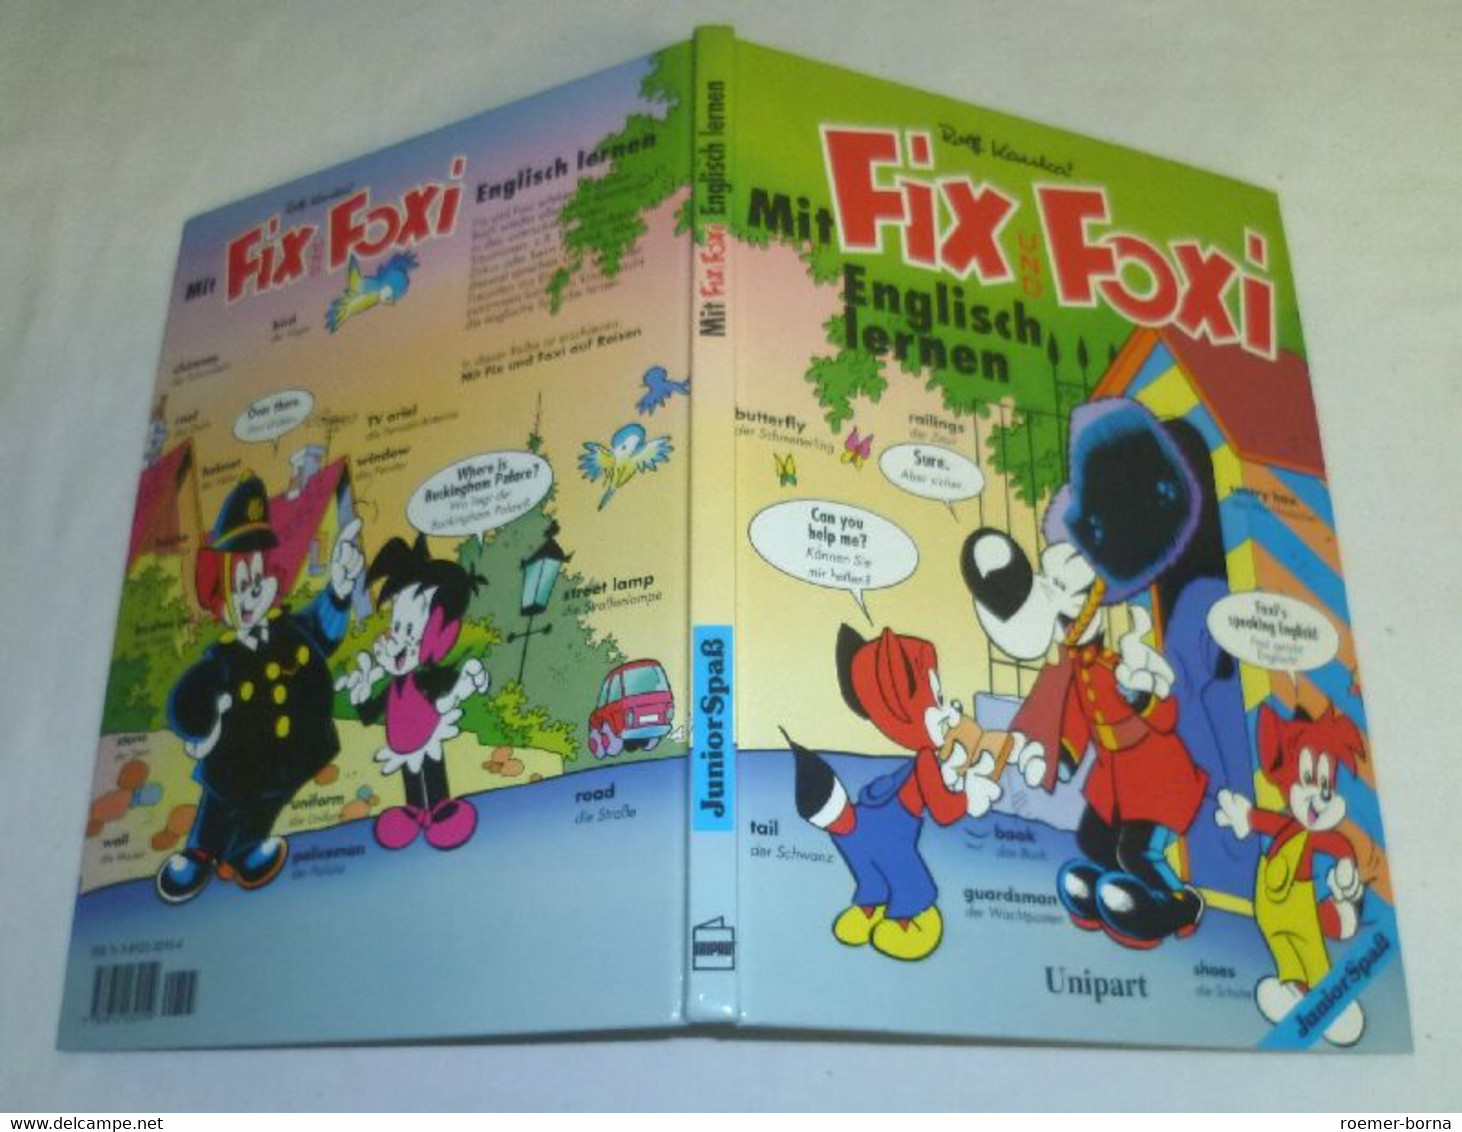 Mit Fix Und Foxi Englisch Lernen - Schulbücher